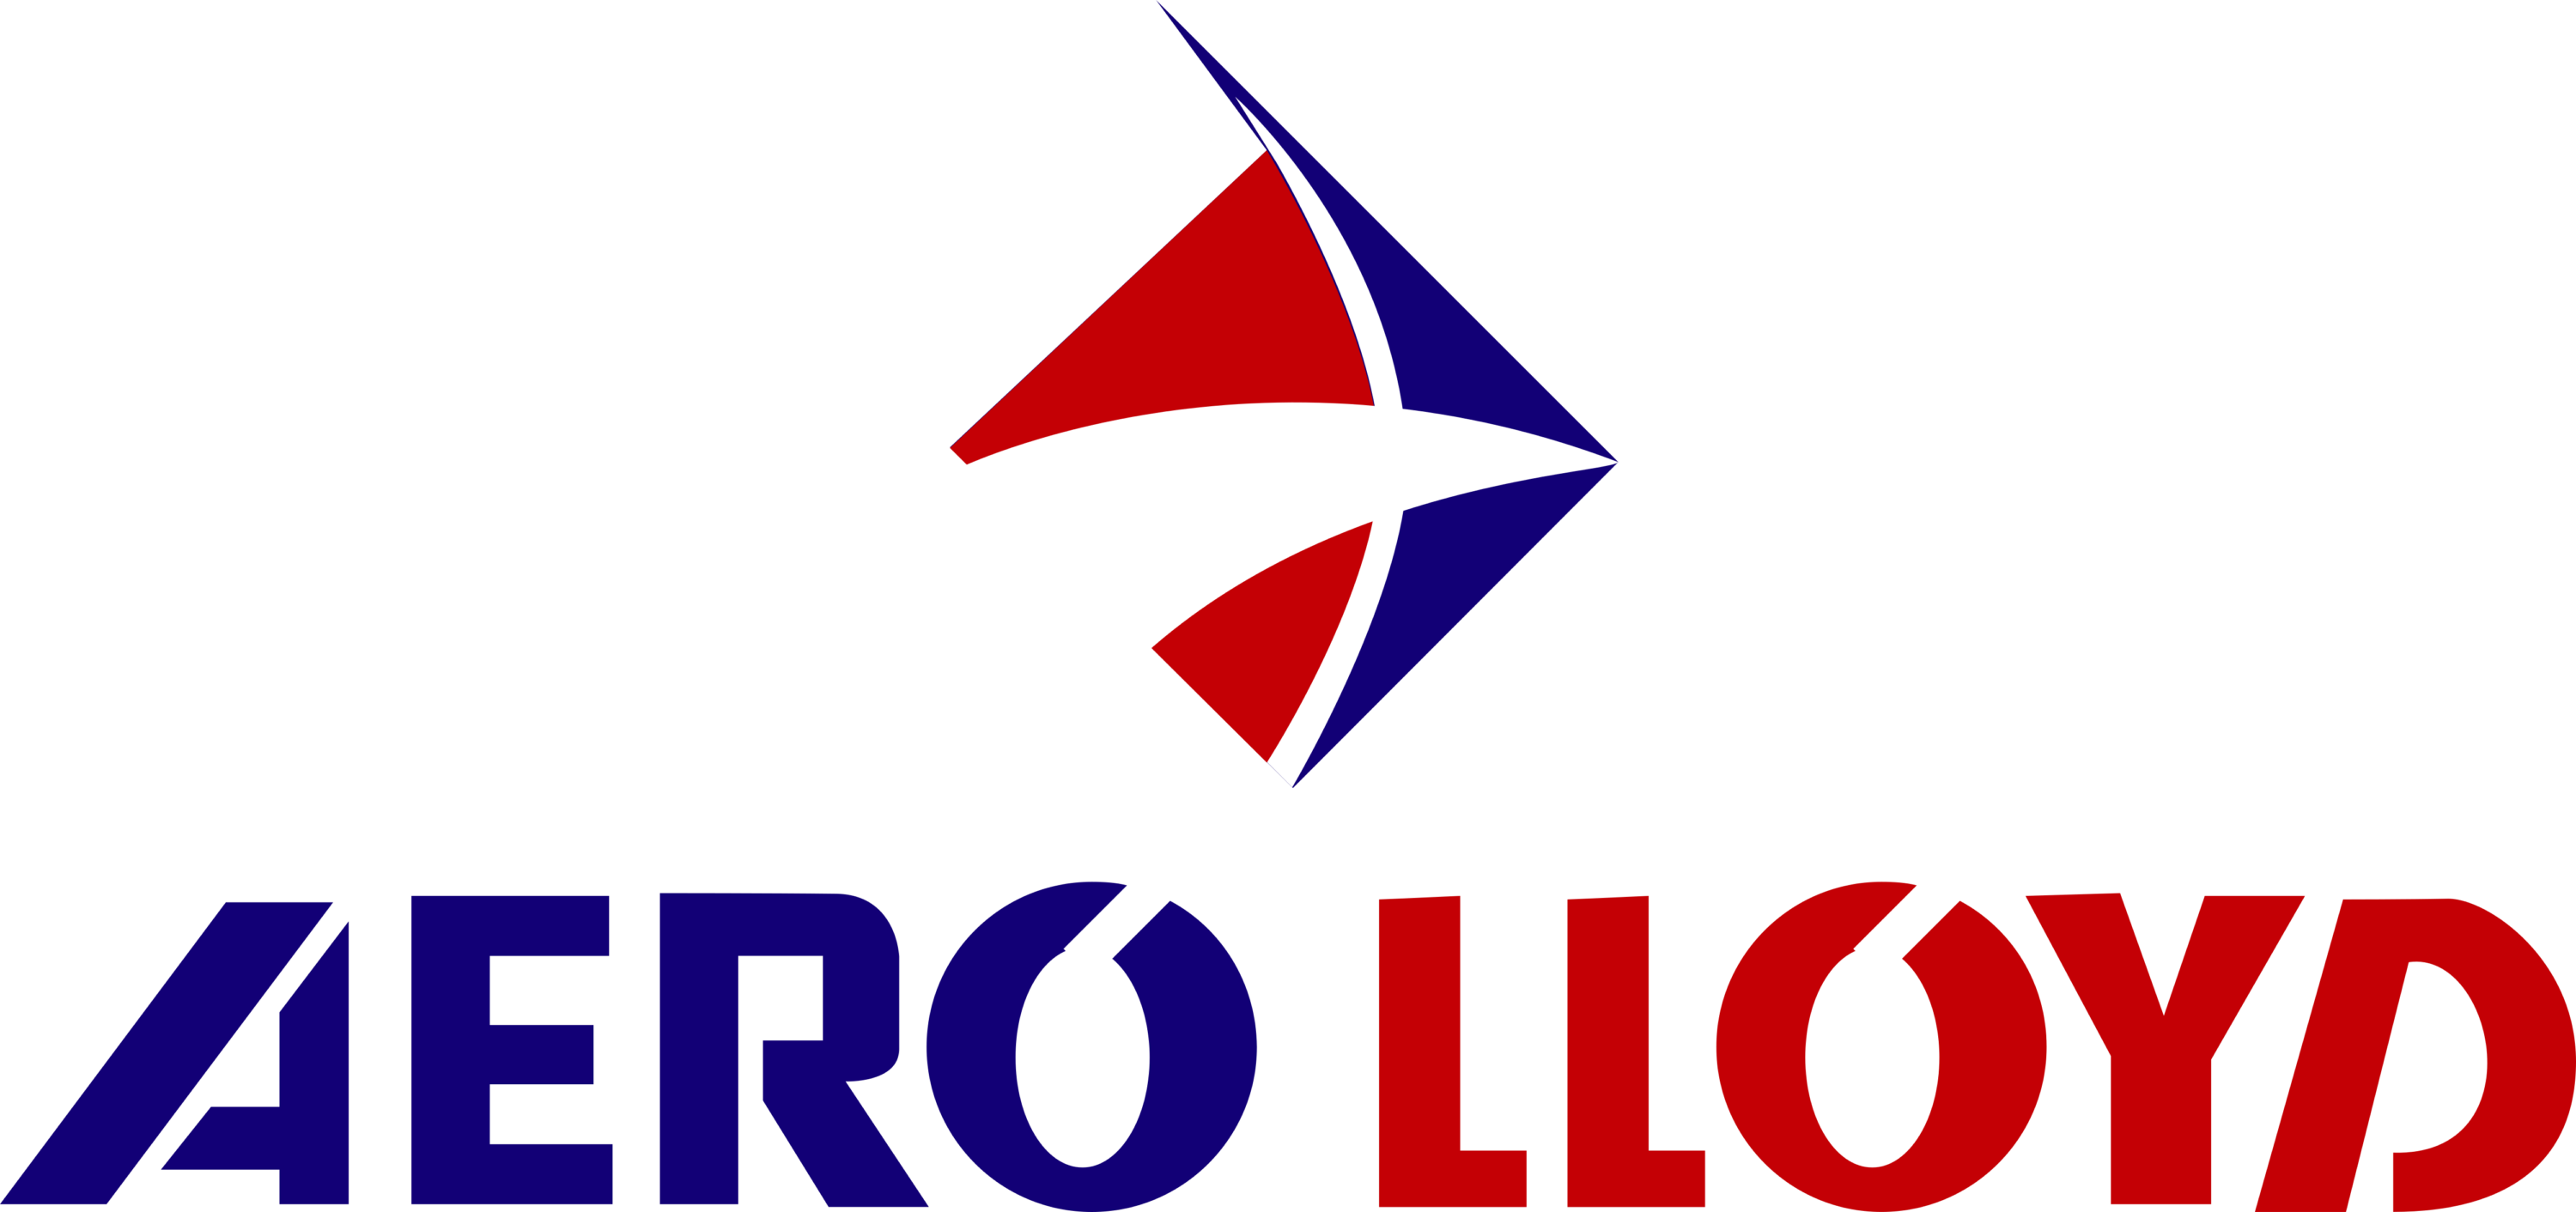 Aero Lloyd Logo